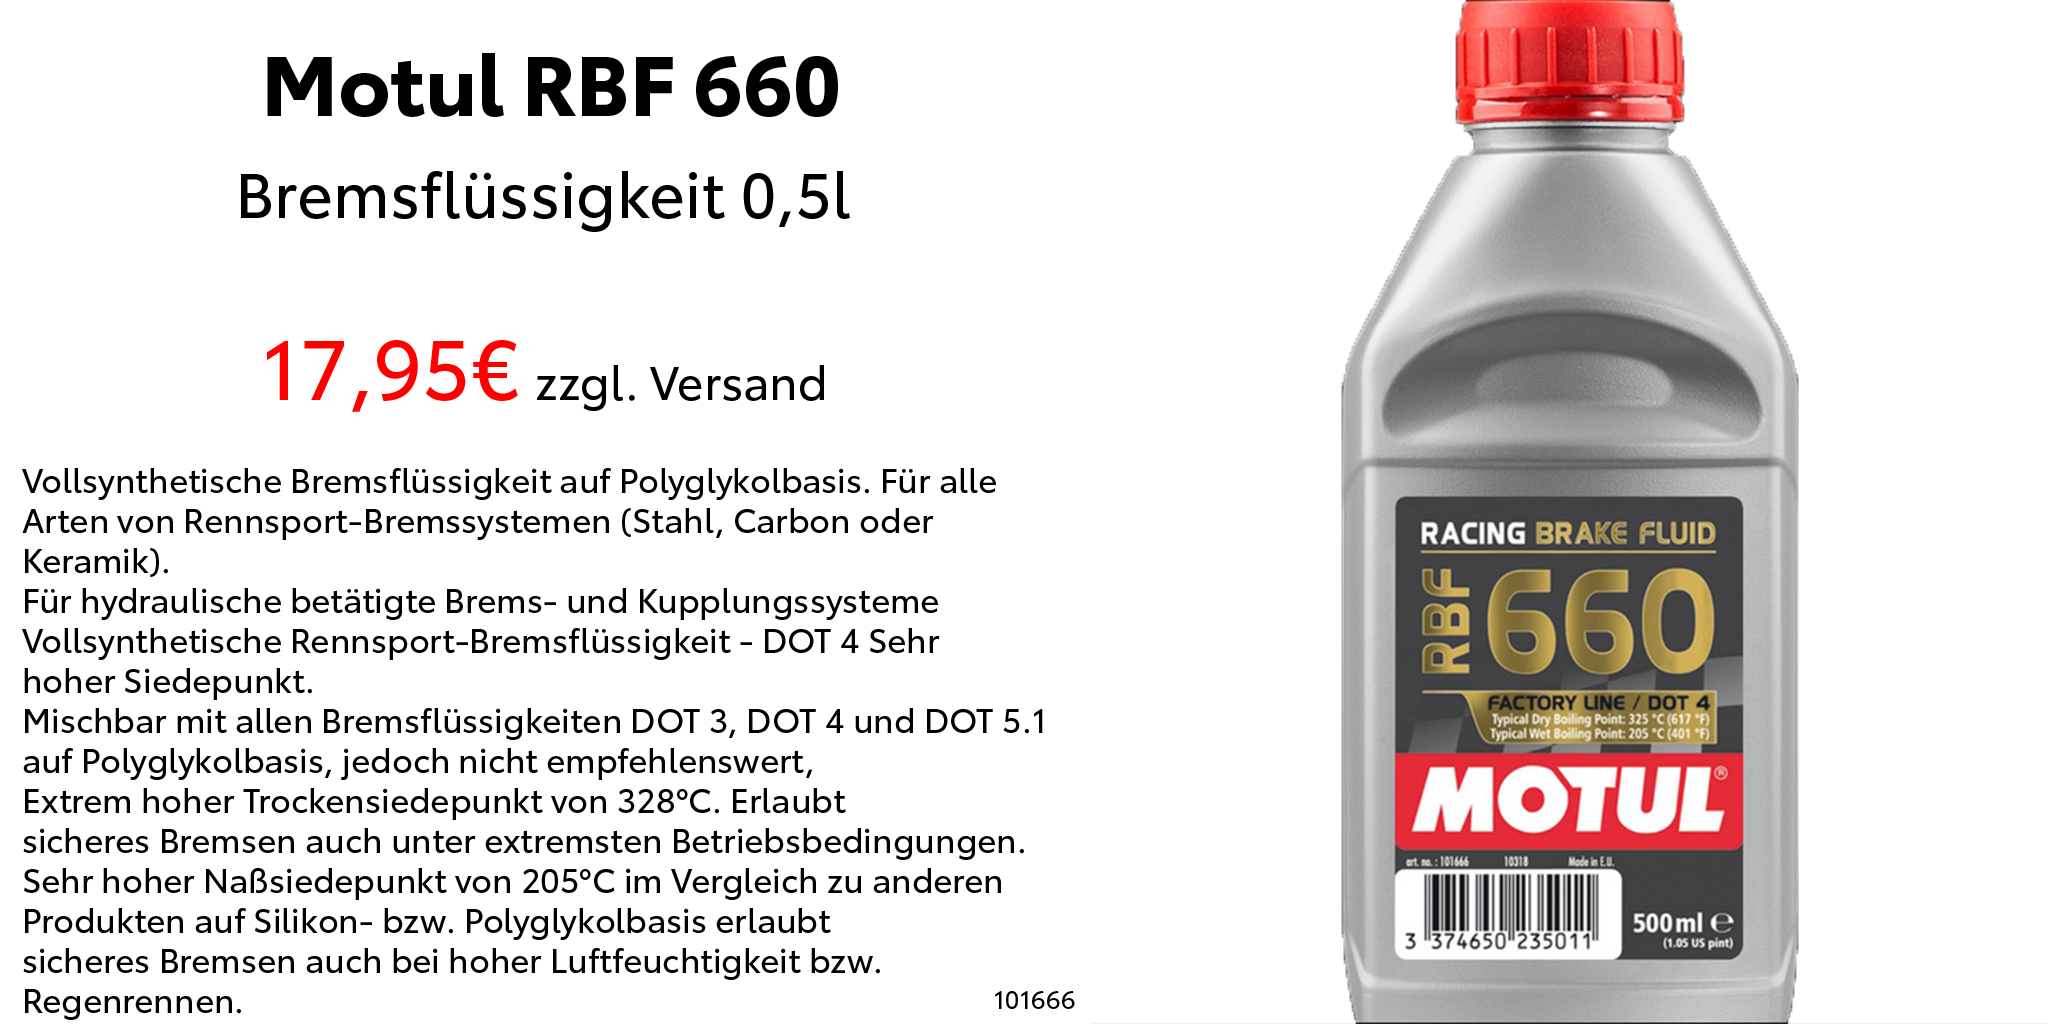 Motul-RBF-660